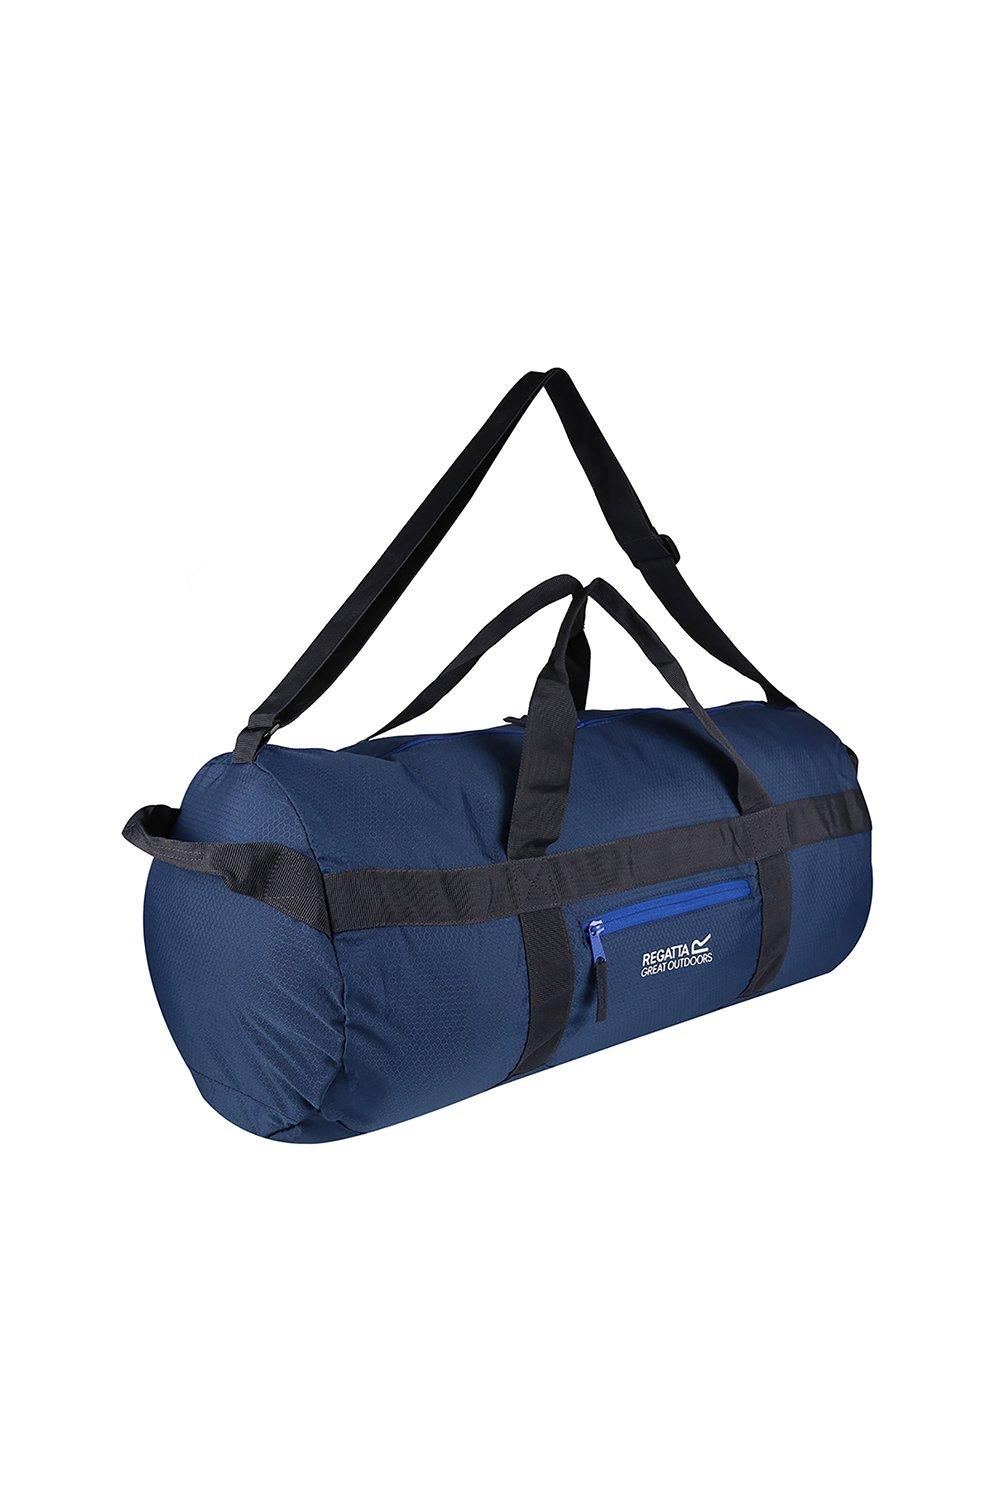 Износостойкая спортивная сумка Packaway 40L Regatta, синий сумка спортивная 40 см плечевой ремень черный